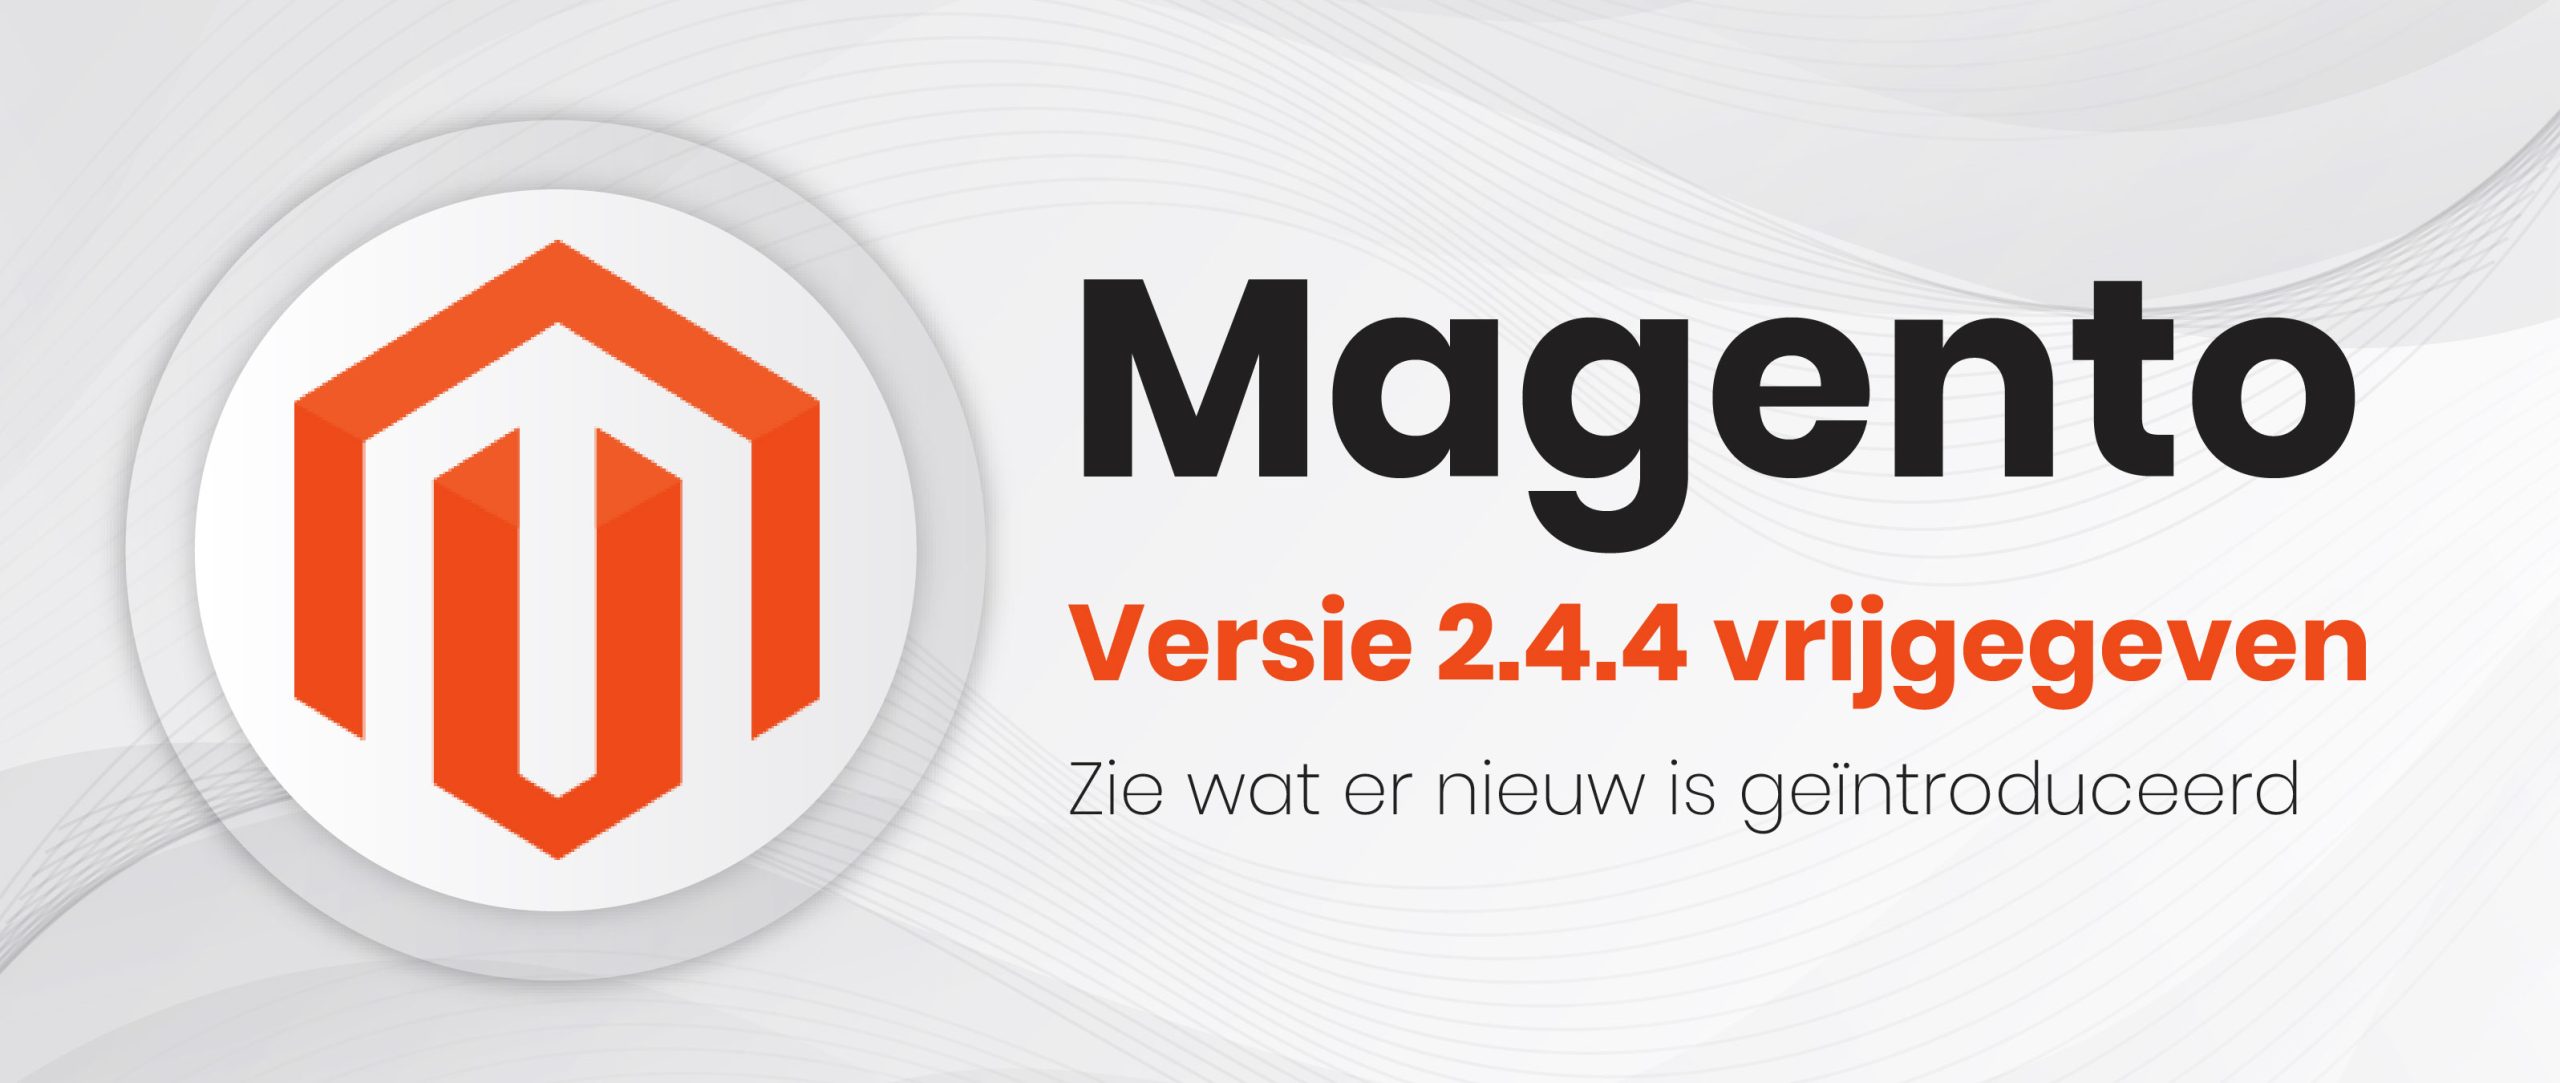 Magento Versie 2.4.4 vrijgegeven – Zie wat er nieuw is geïntroduceerd